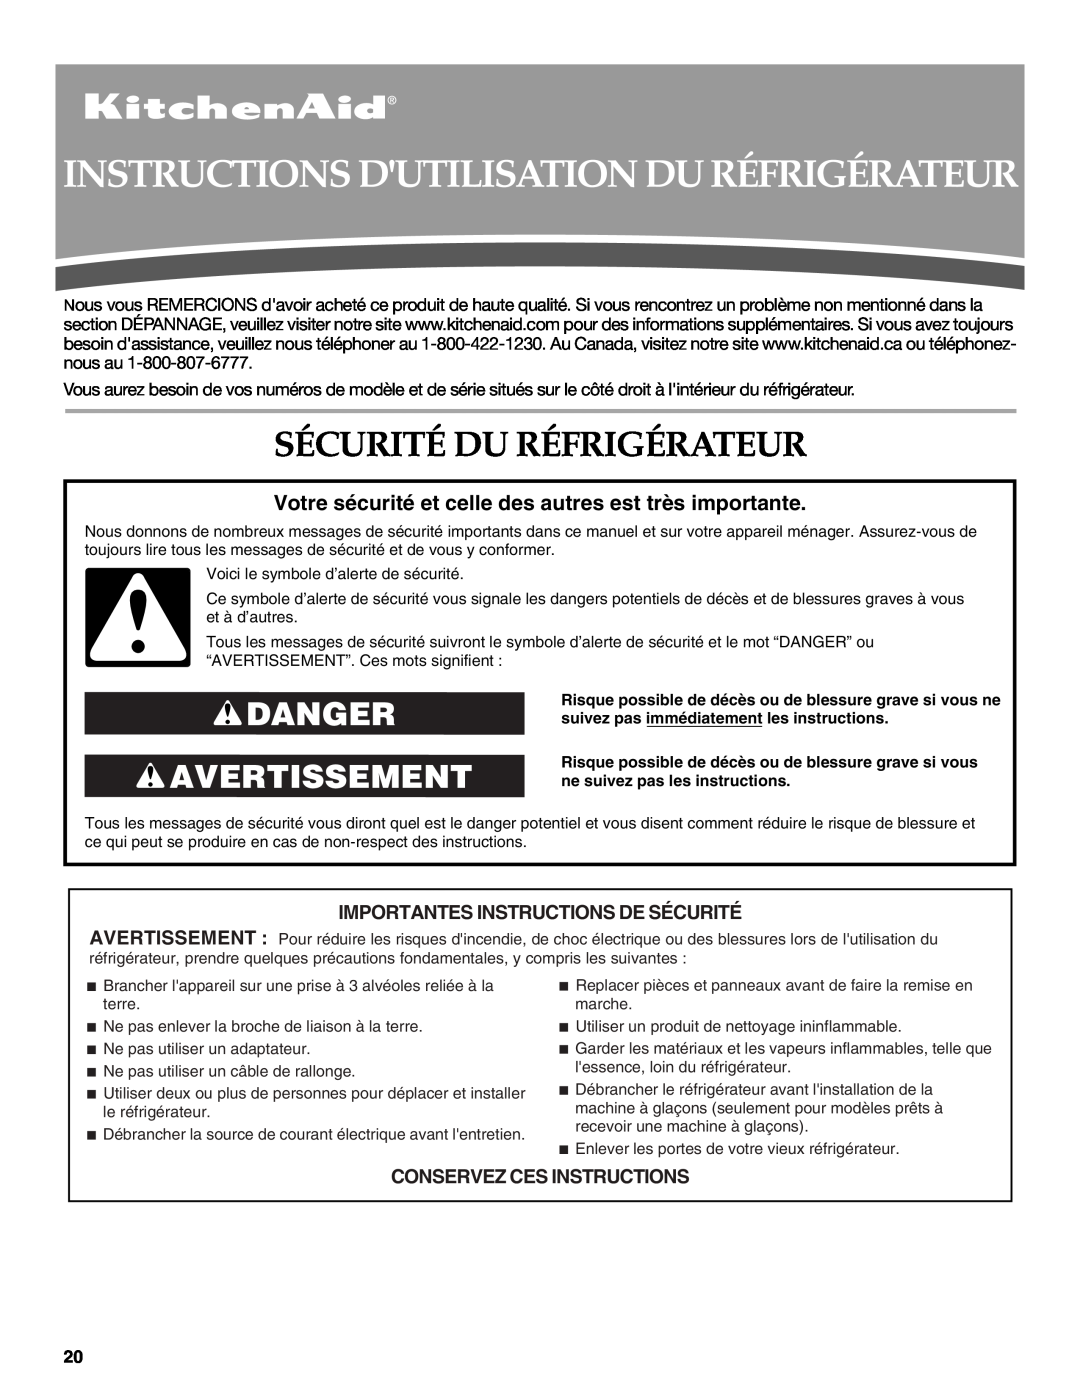 KitchenAid W10137649A Instructions Dutilisation Du Réfrigérateur, Sécurité Du Réfrigérateur, Danger Avertissement 